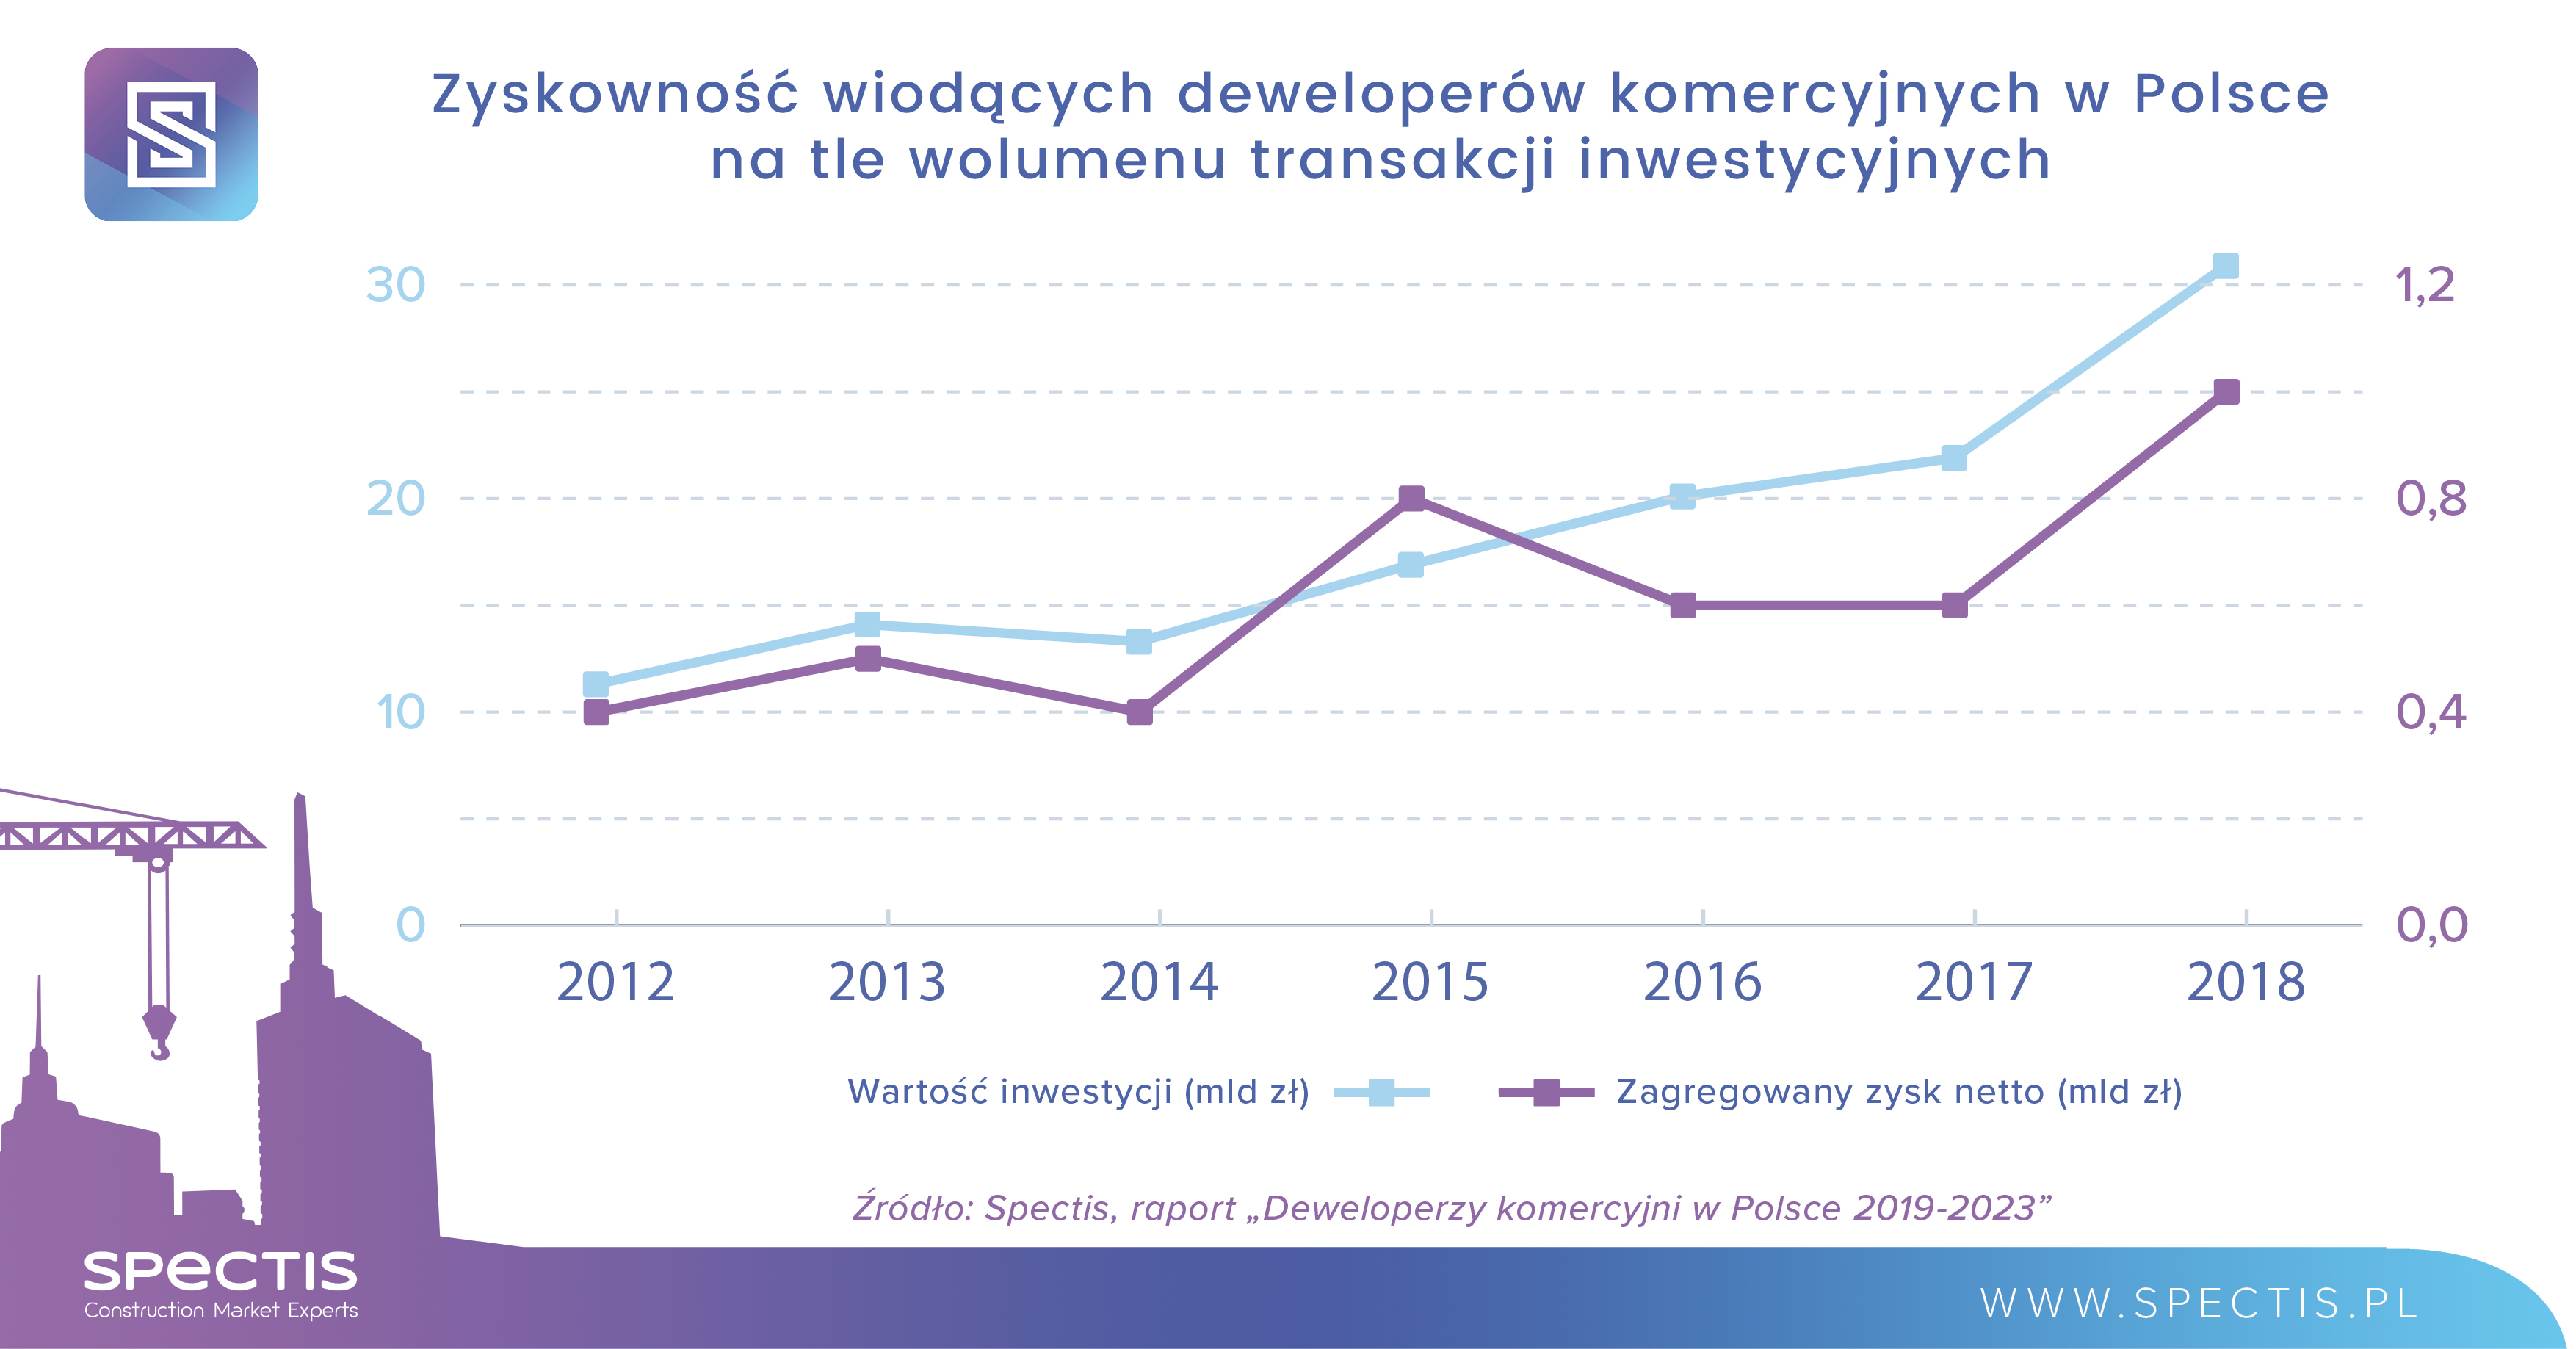 1 mld zł zysku netto wypracowany przez 30 wiodących deweloperów komercyjnych w Polsce w 2018 r.